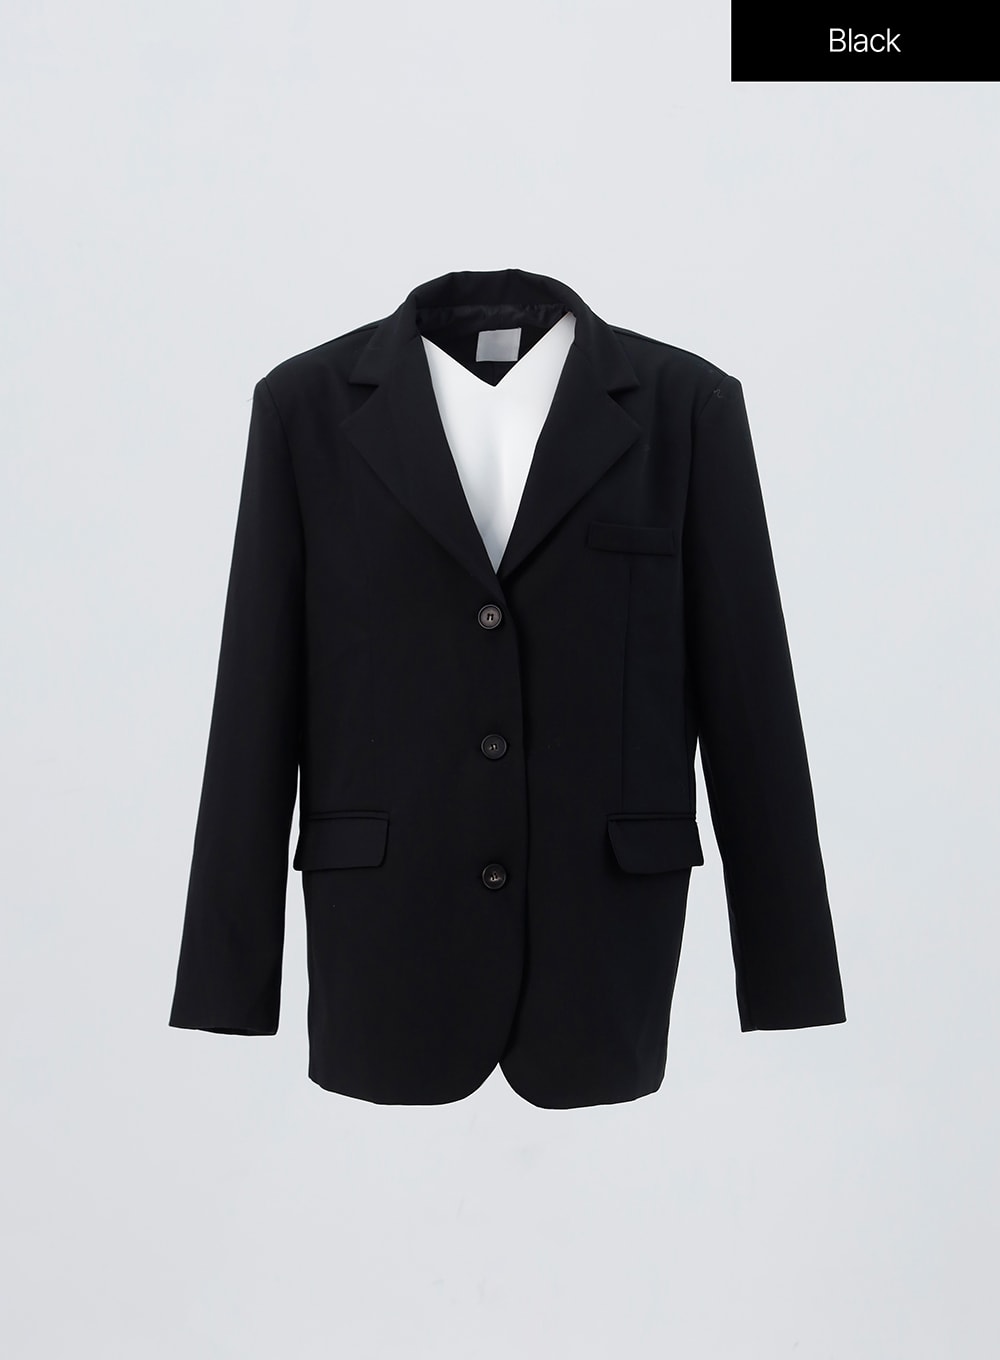 overfit-minimal-blazer-oo304 / Black